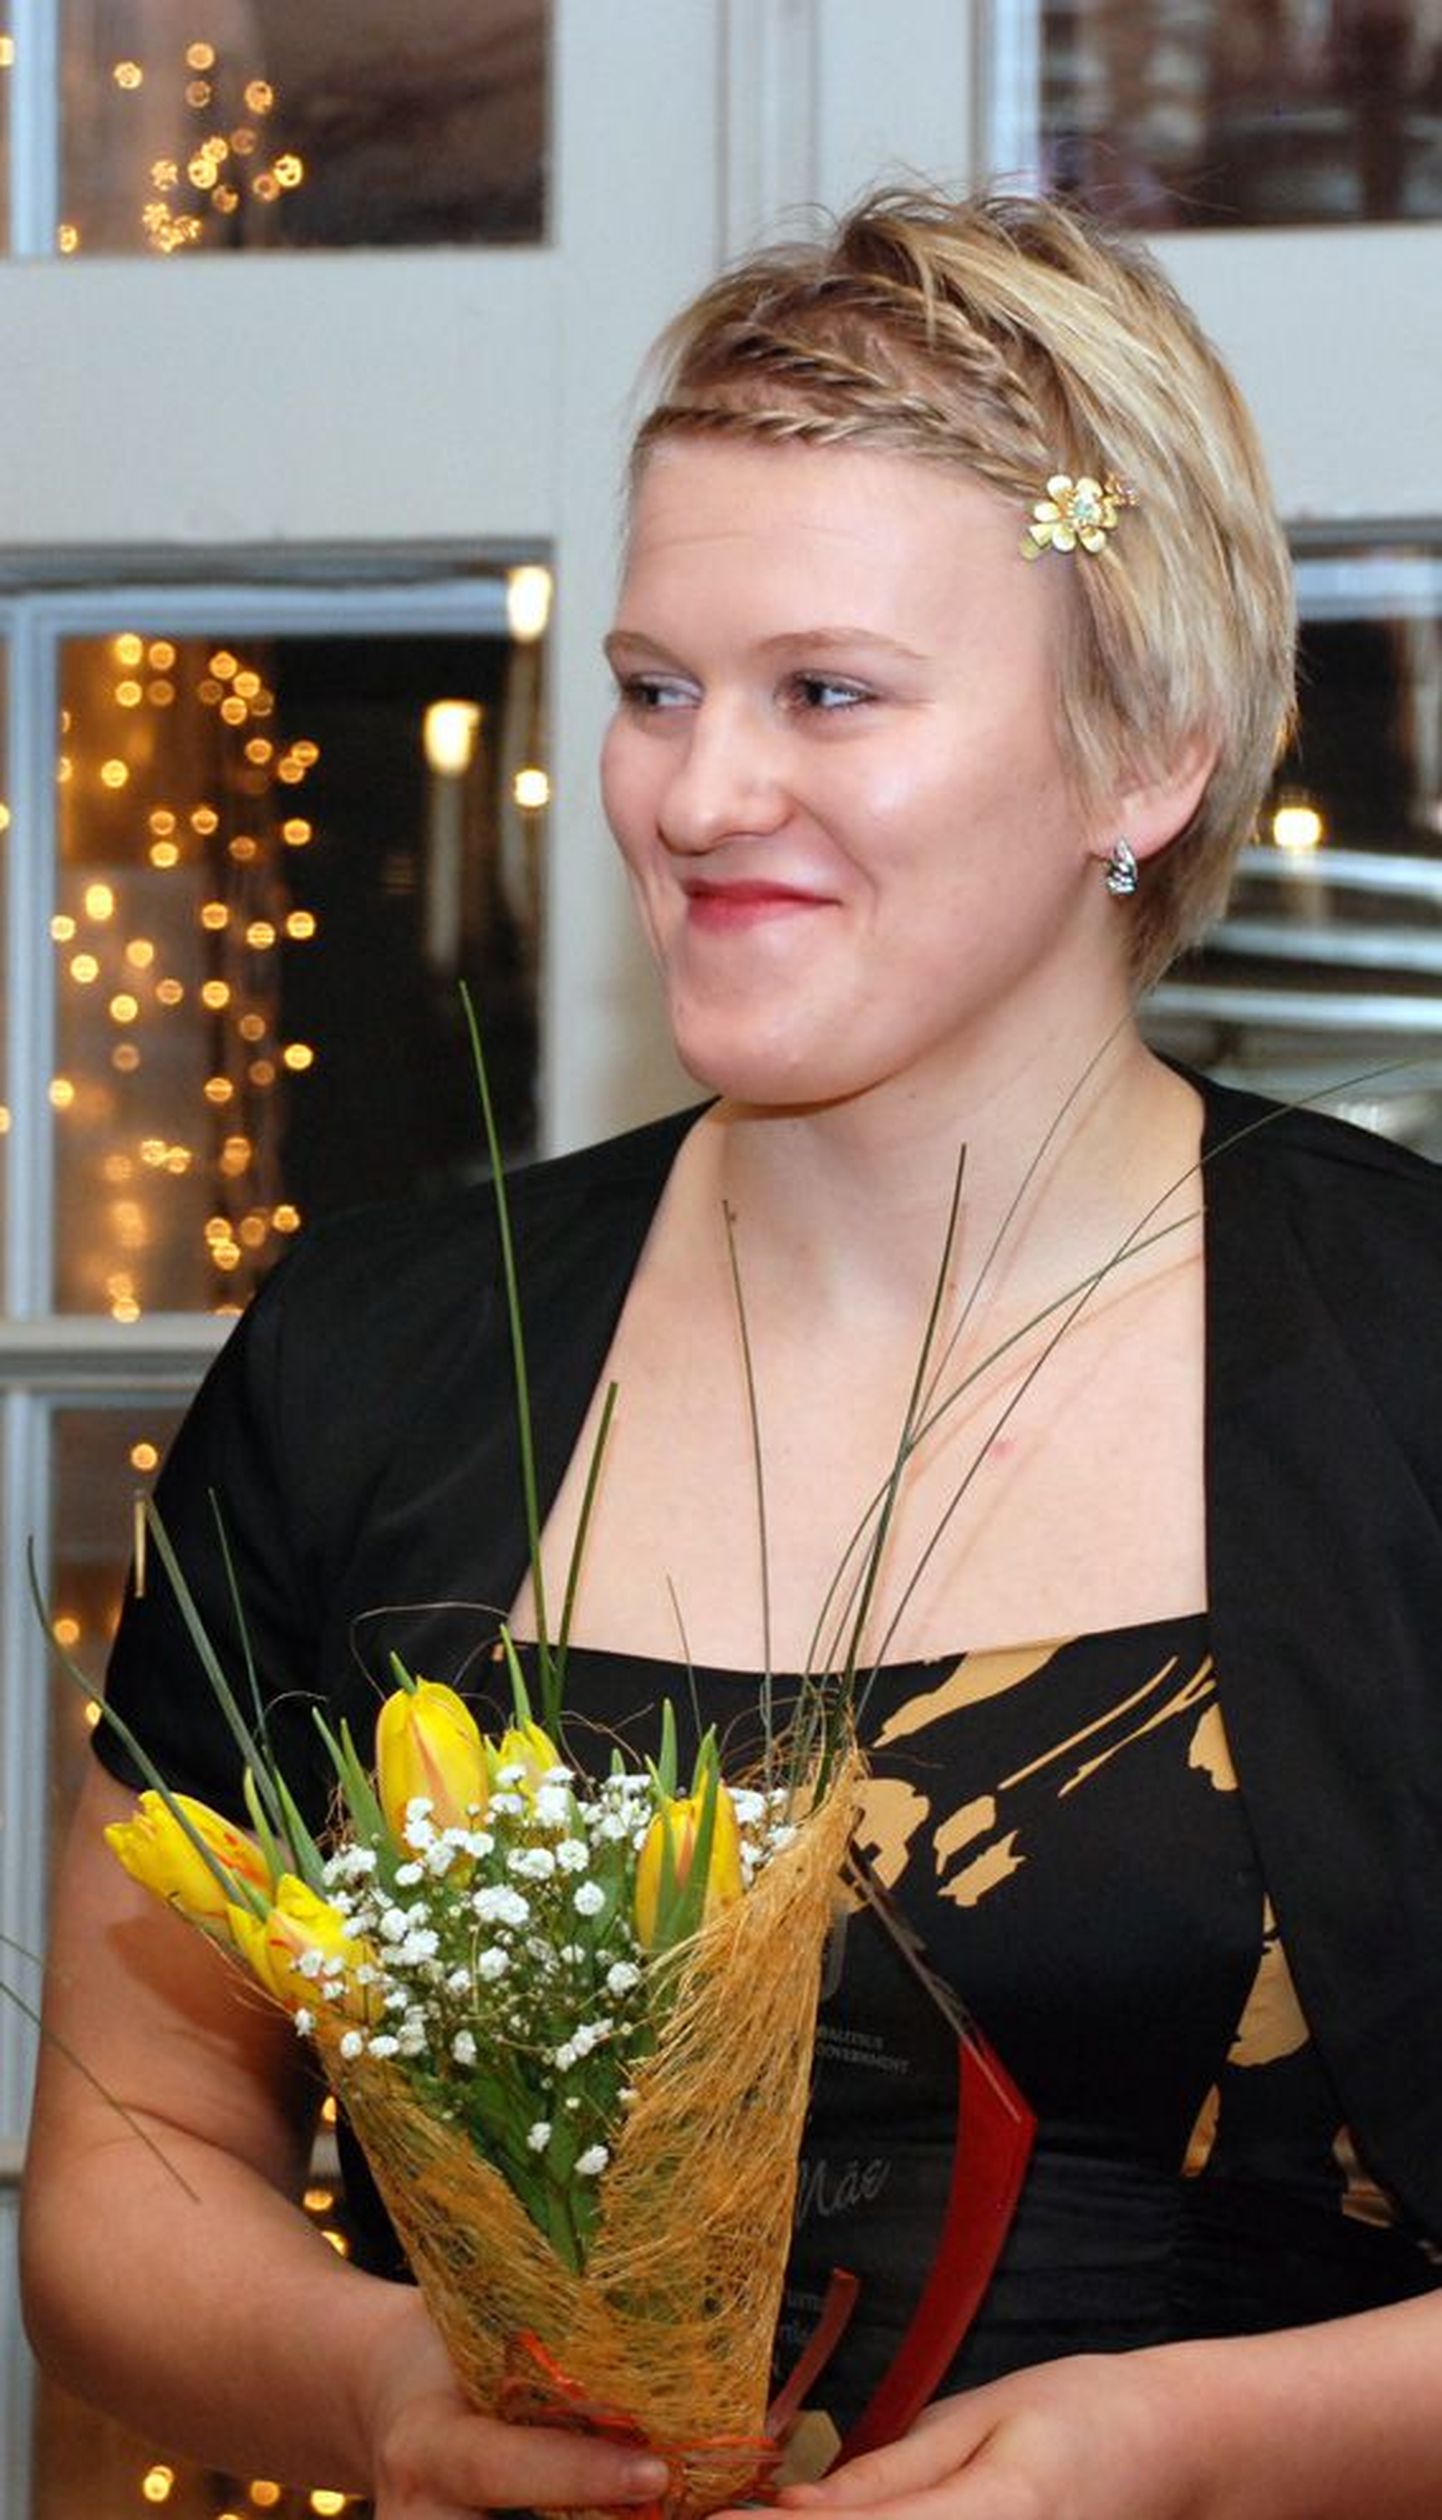 Epp Mäe võttis Sagadi mõisas vastu Lääne-Virumaa 2011. aasta parima naissportlase auhinna.